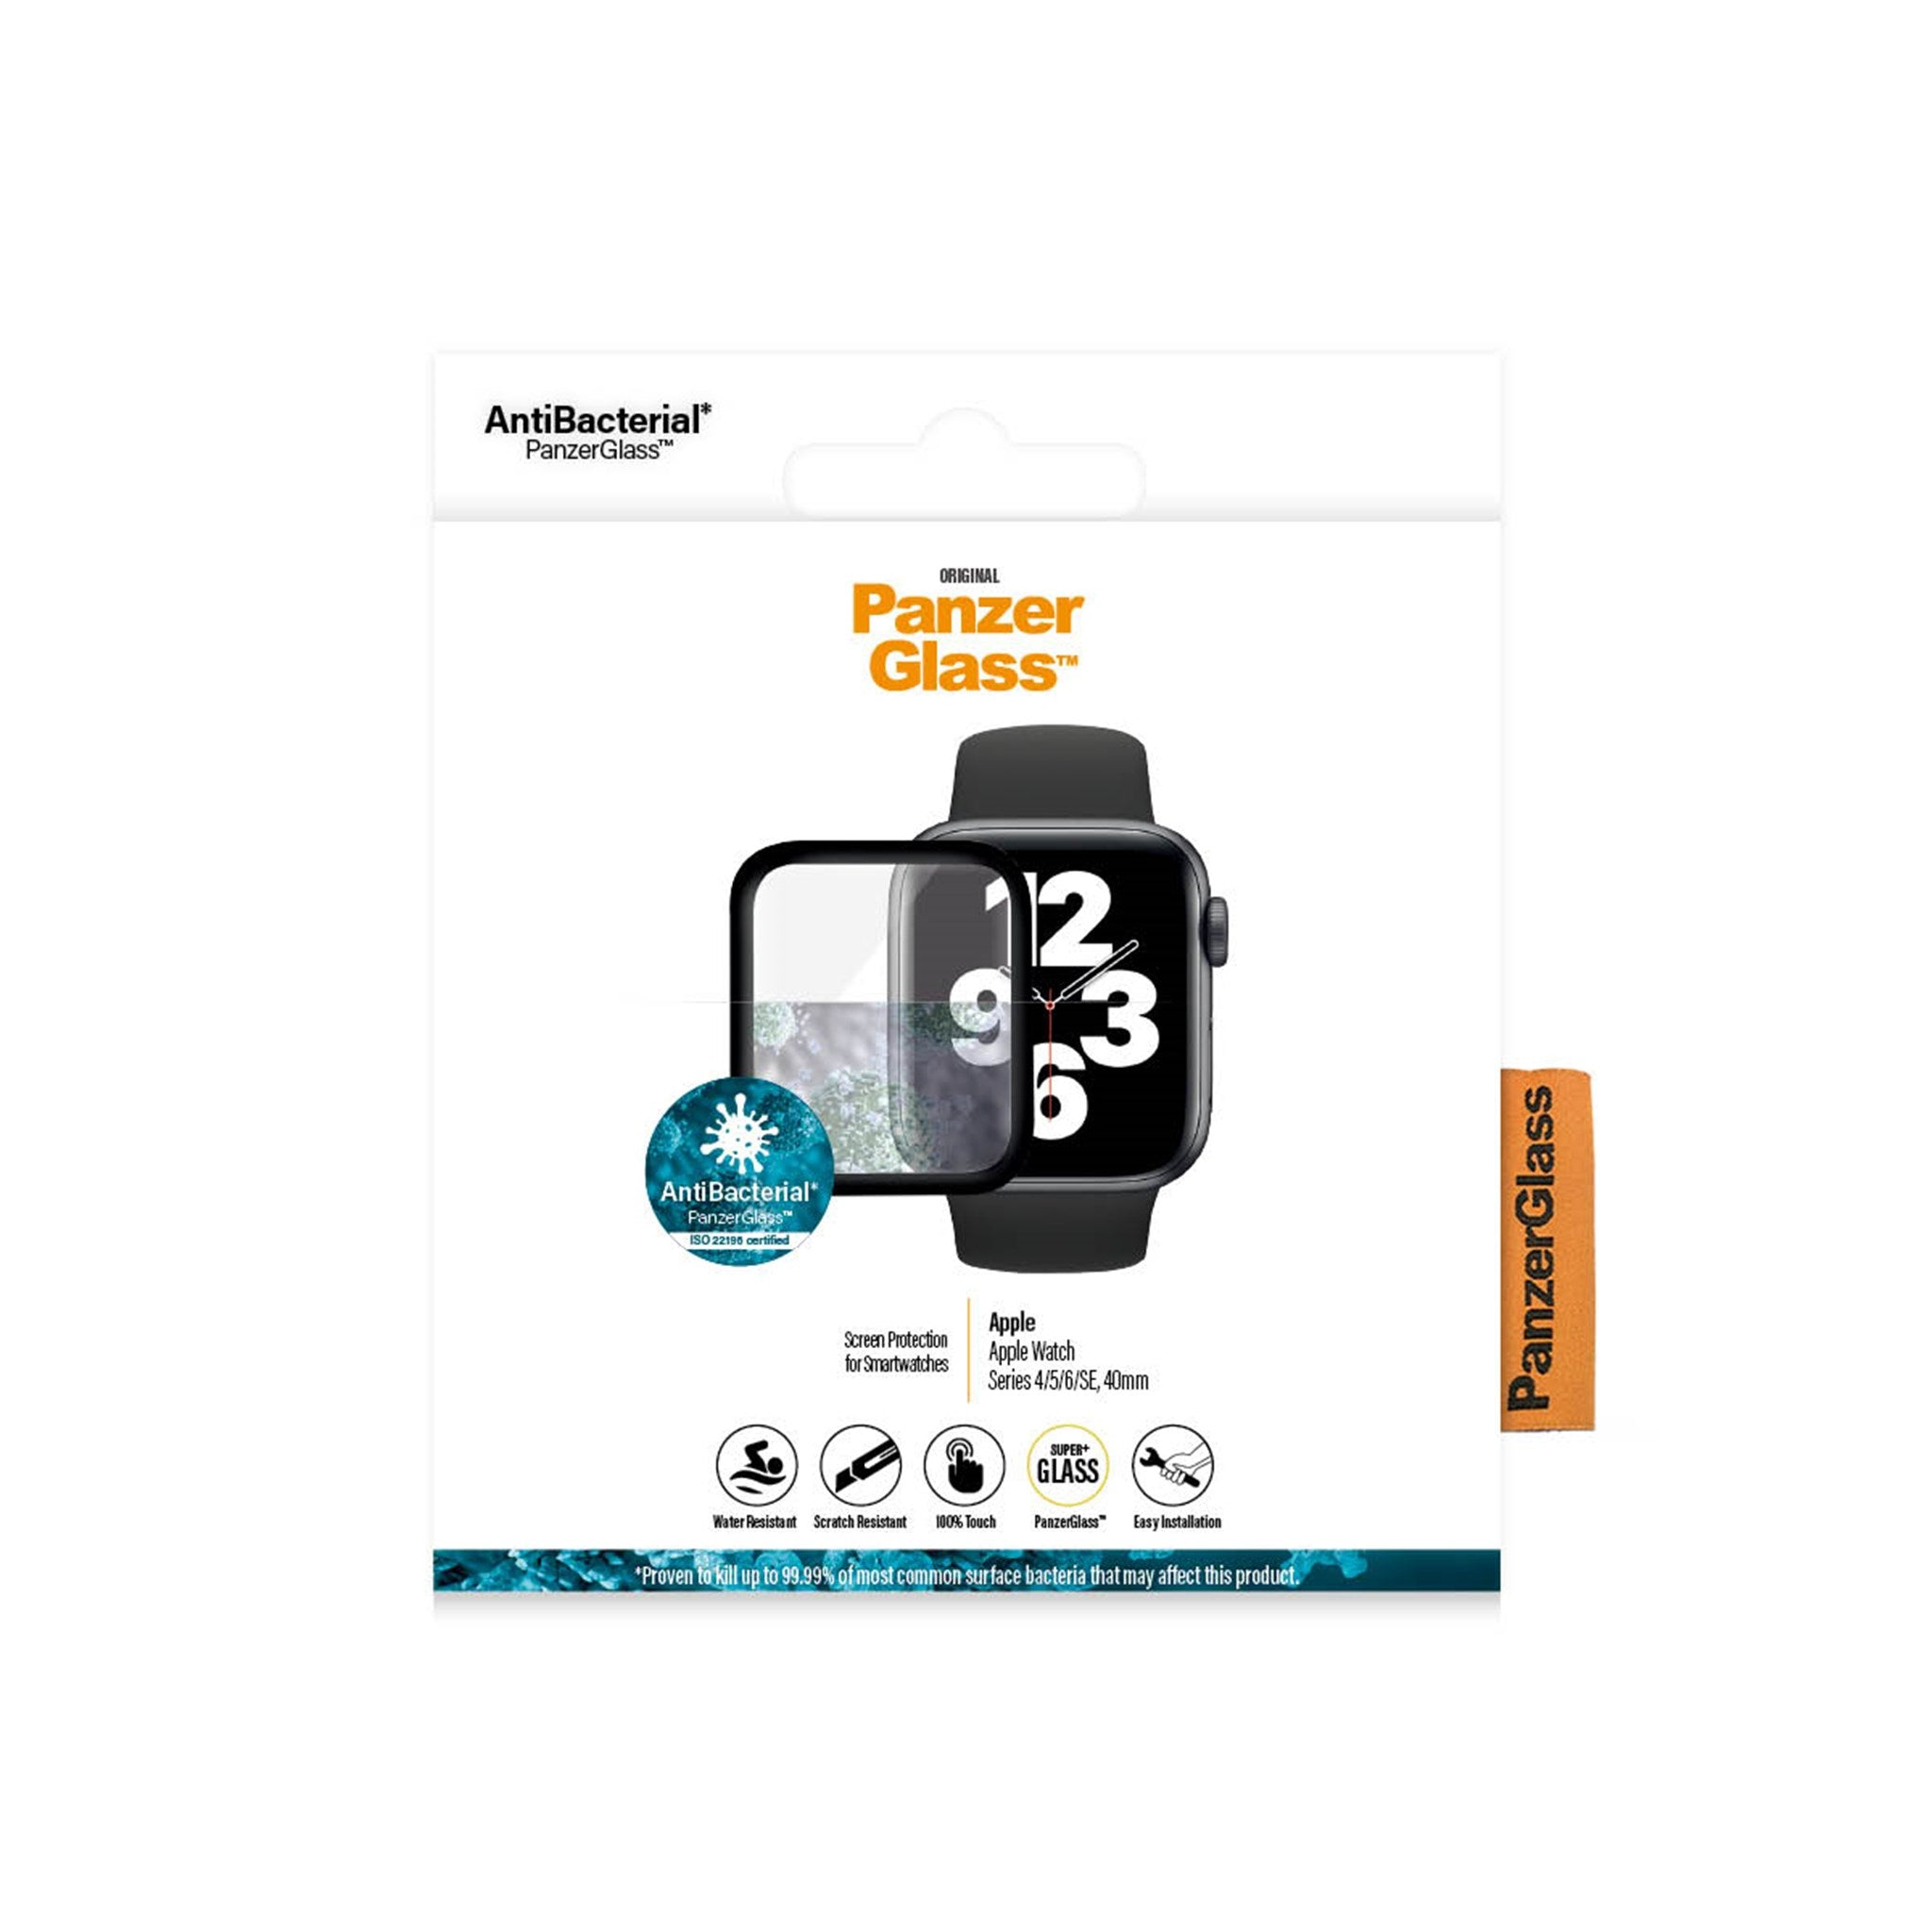 PANZERGLASS Watch Series 4 6 SE 40mm| Series | | Watch 40mm 5 40mm | Series Smartwatch(für | 40mm| | Apple SE 40mm) 4 Watch Displayschutzglas Watch Watch 5 Series 6